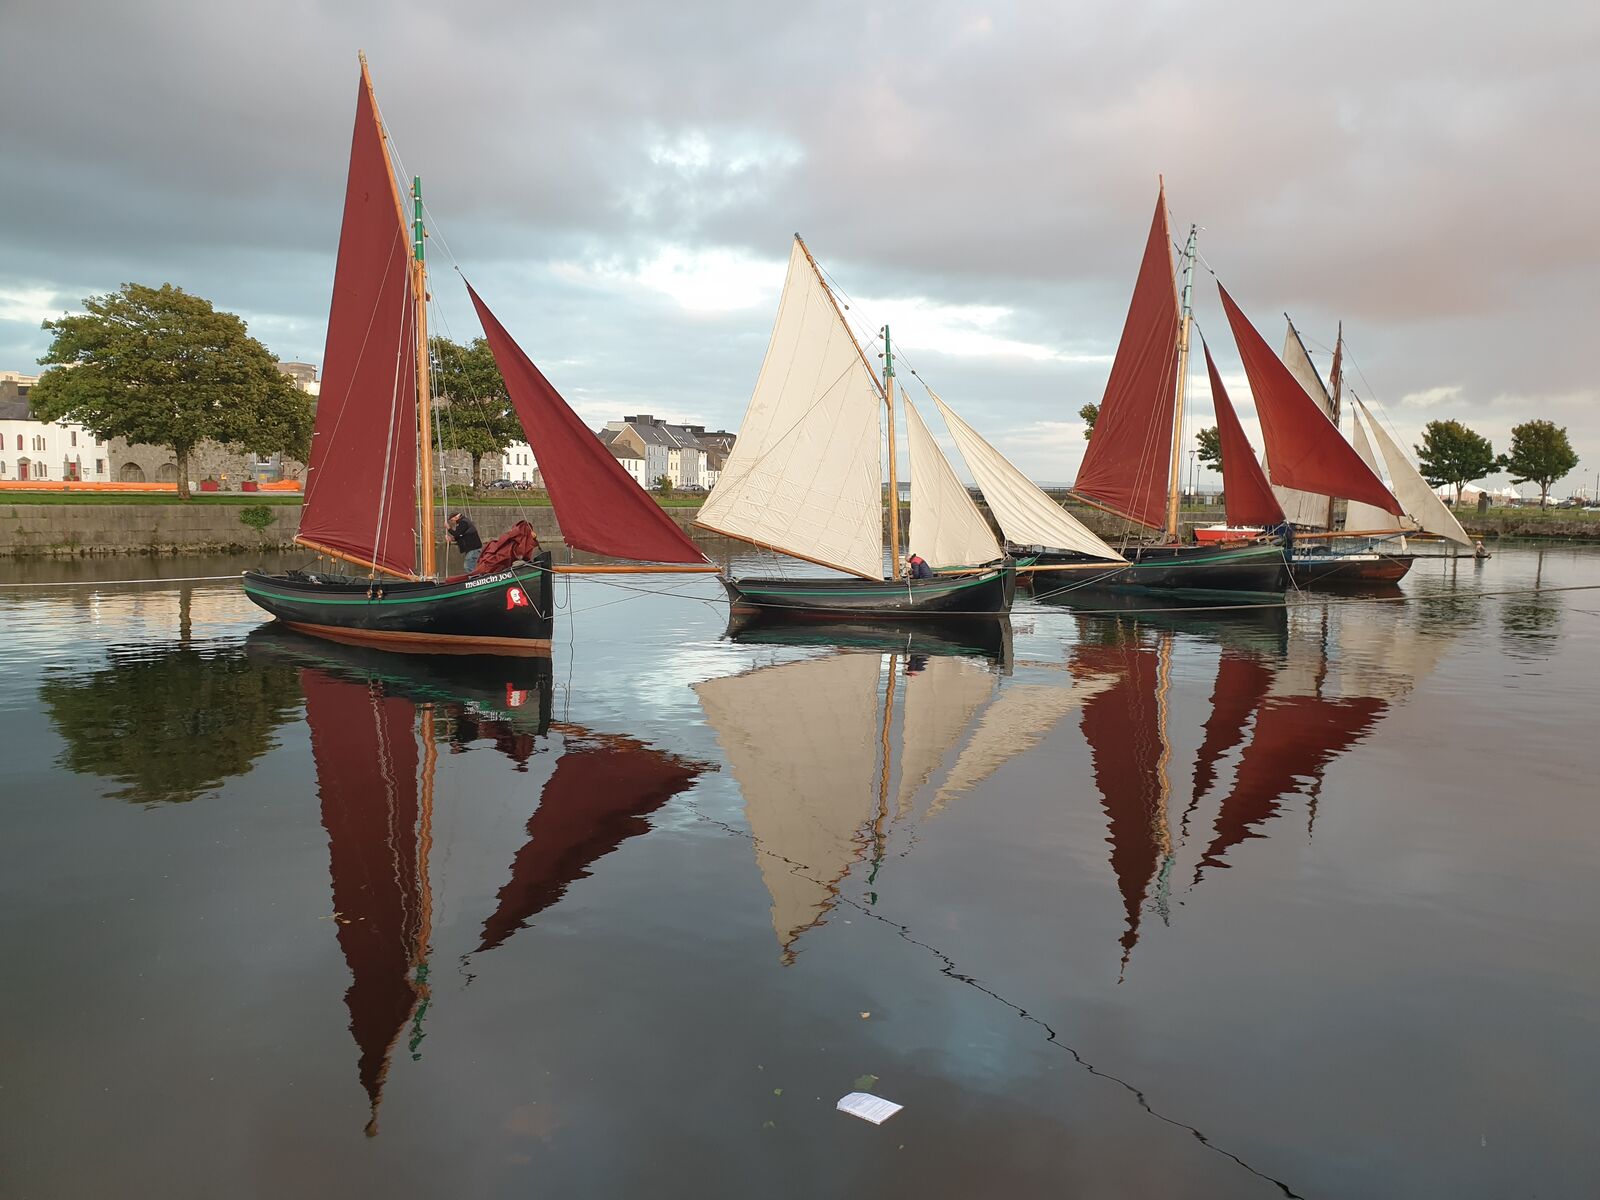 Three so-calleed Galway hooker fishing boats